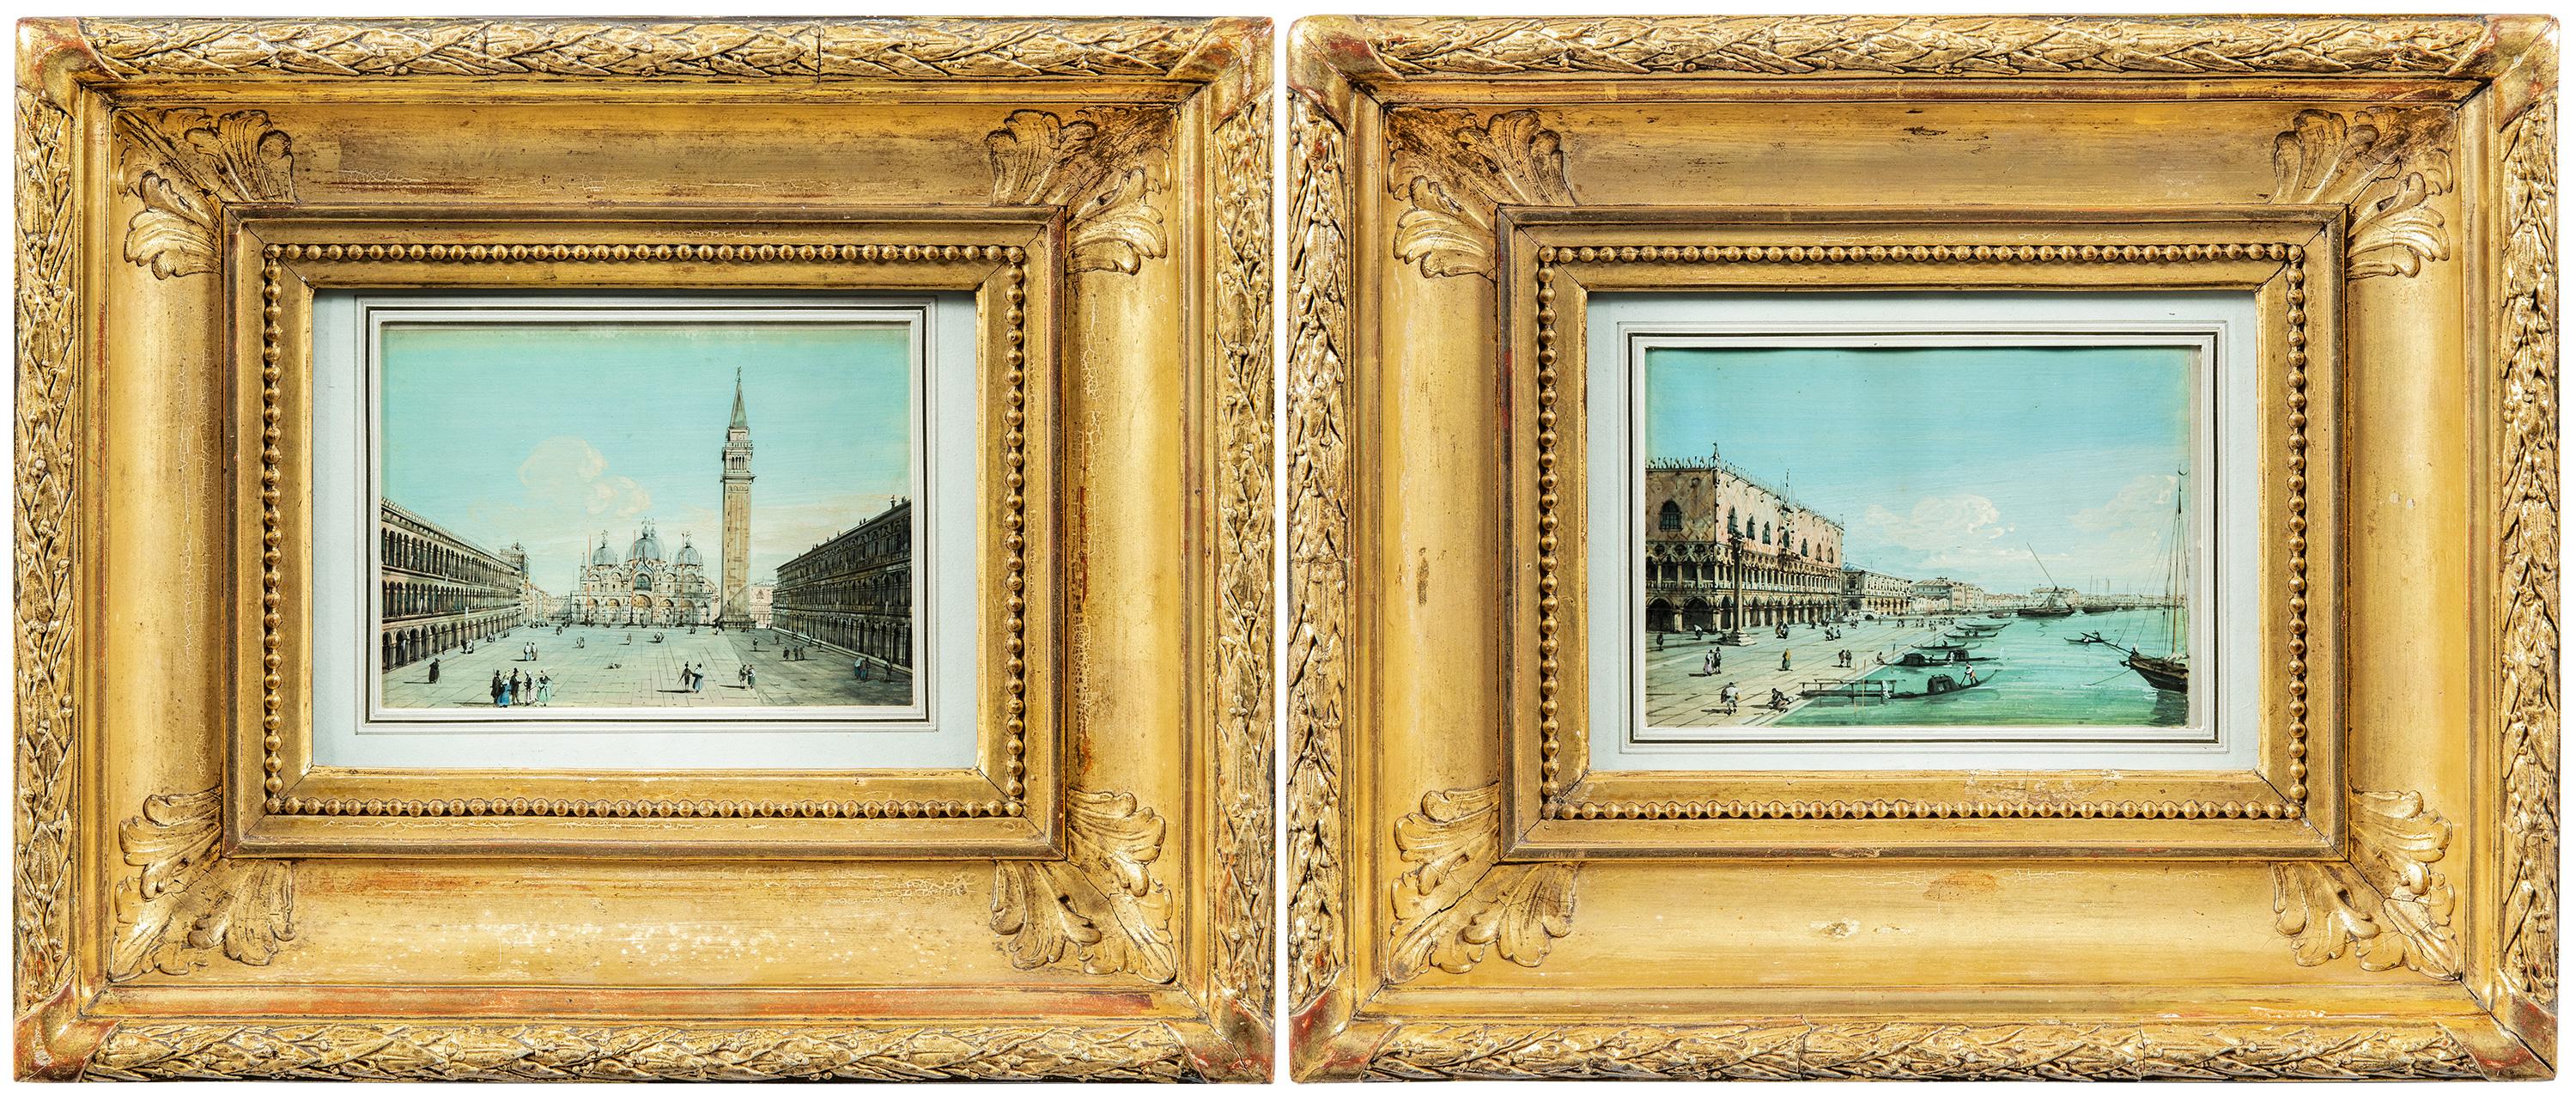 Carlo Grubacs (Perasto 1801 - Venedig 1870) - Venedig, zwei Ansichten der Piazza S. Marco und des Beckens in Richtung Riva degli Schiavoni.

11 x 16 cm ohne Rahmen, 29,5 x 34,5 cm mit Rahmen.

Antike Temperamalereien auf Papier, in alten